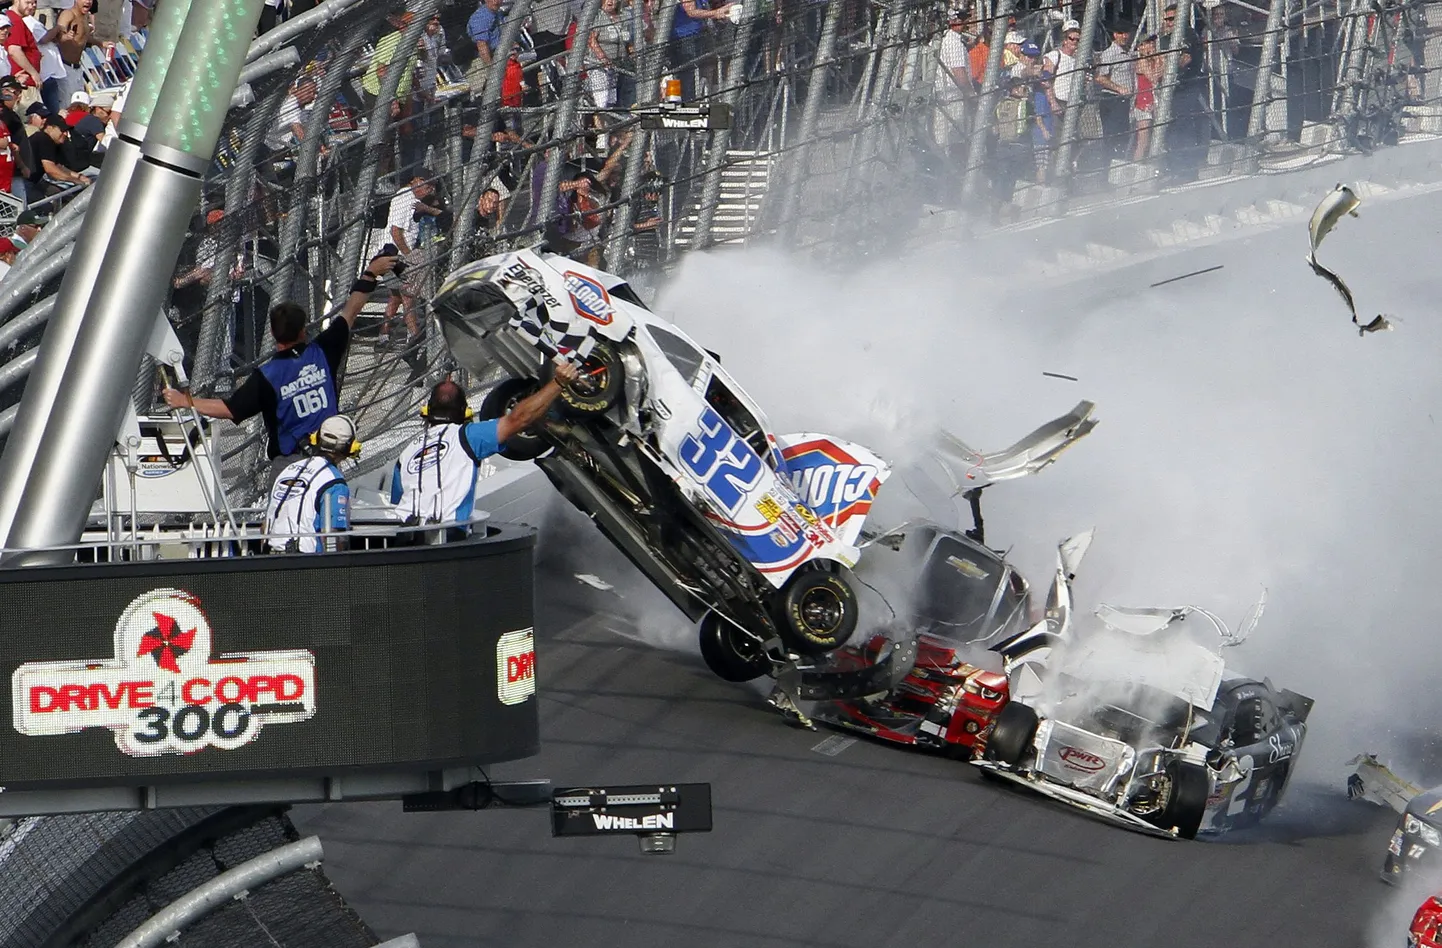 NASCAR-sarja avarii tagajärjel sai vigastada mitu pealtvaatajat, kui autodetailid paiskusid tribüünile.